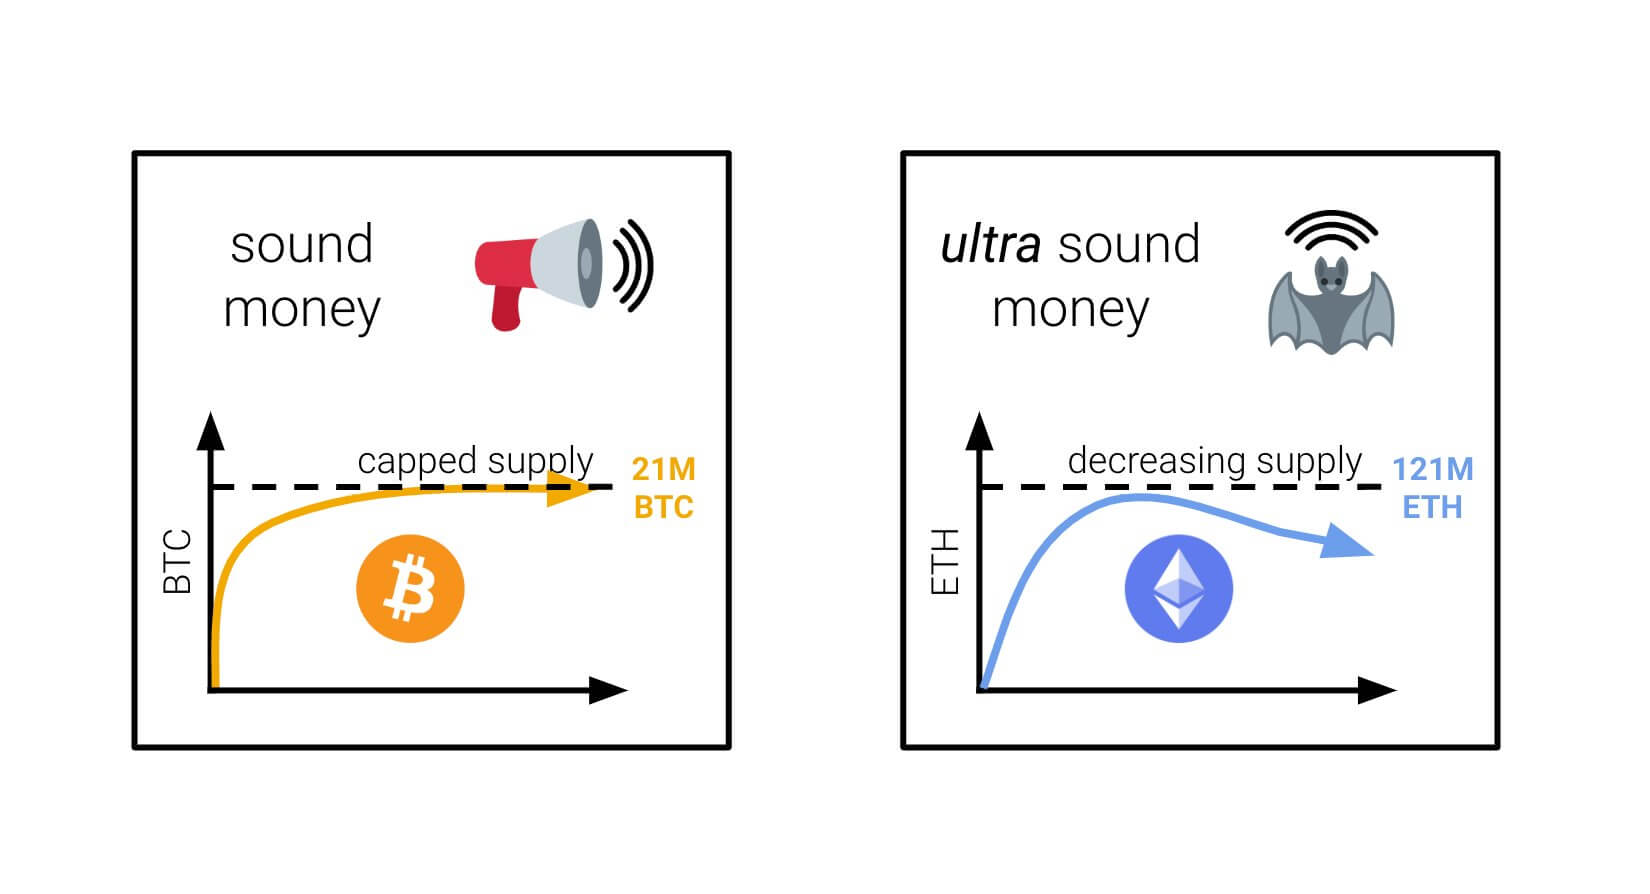 sound-money-vs-ultrasound-money.jpeg